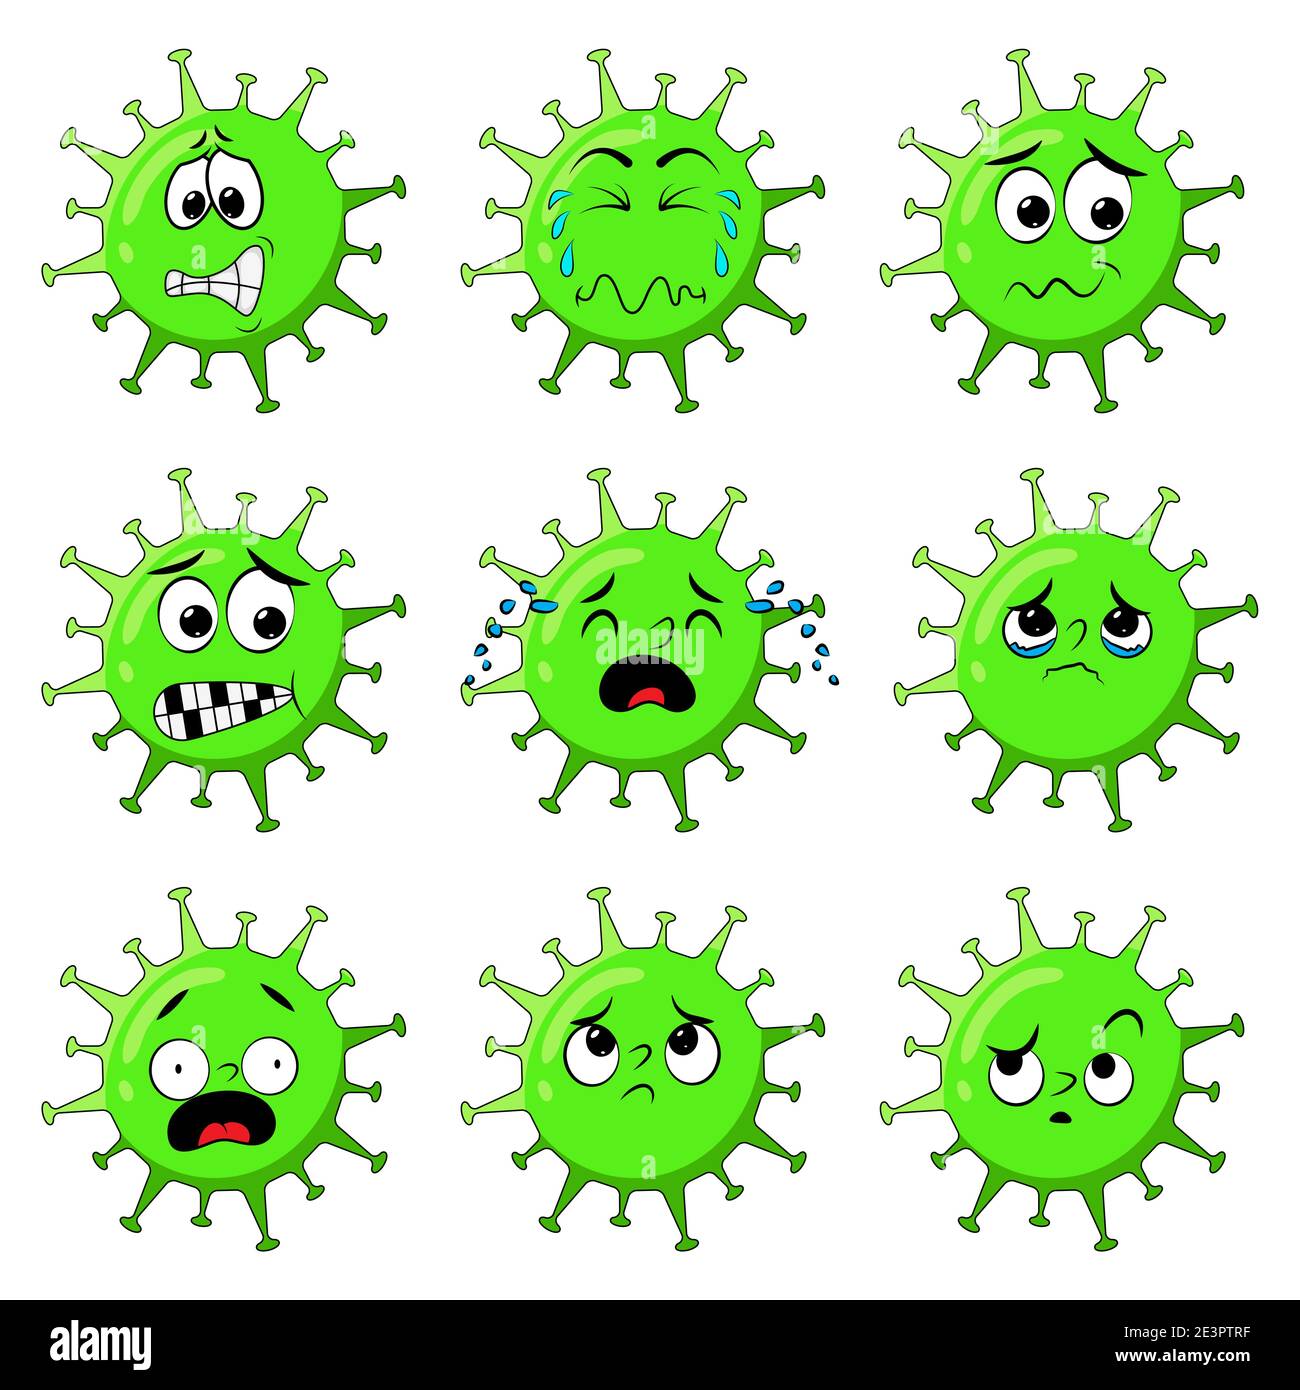 Coronavirus Charakter zeigt Sorge und Angst Ausdruck. Cartoon Satz von gestressten Virus Maskottchen mit verschiedenen Gesichtsemotion wie nervös, verwirrt. Ve Stock Vektor